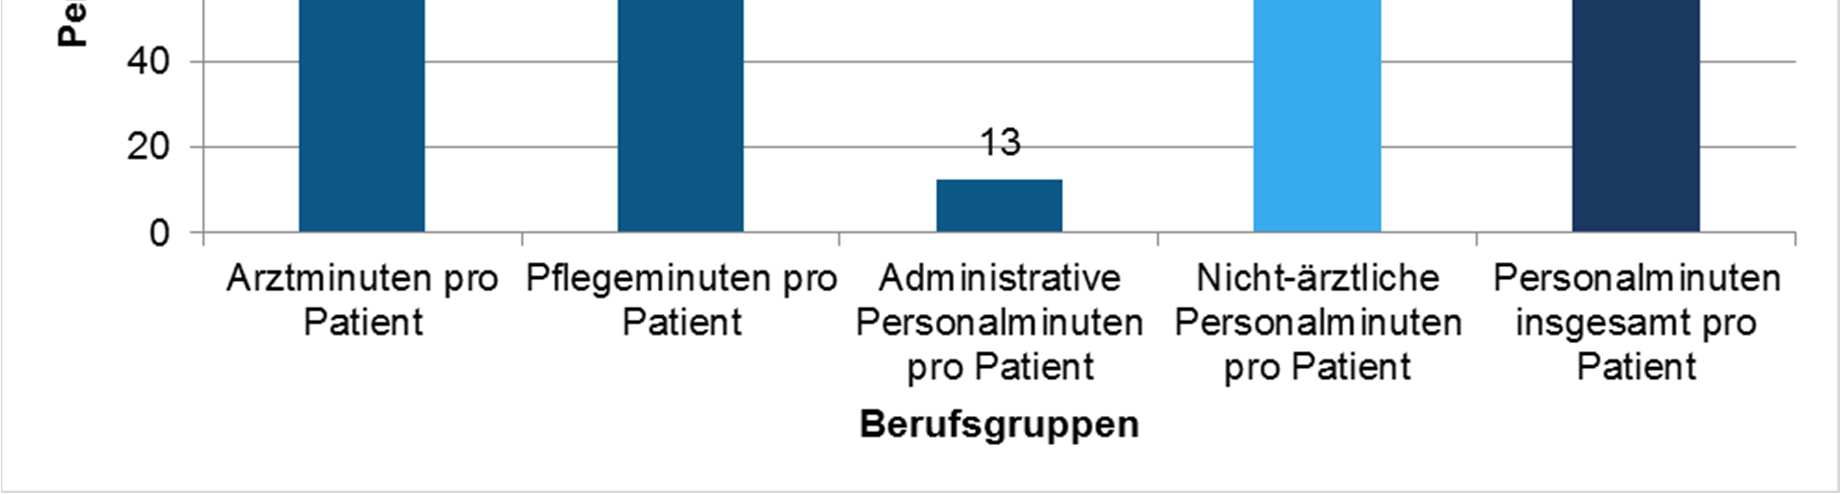 In Abbildung 4 sind die Ergebnisse der 29 Teilnehmer dargestellt, die sowohl Angaben zu den gesamten Patientenkontakten der Notaufnahme im Jahr 2013 sowie zu den durchschnittlichen aufgewendeten